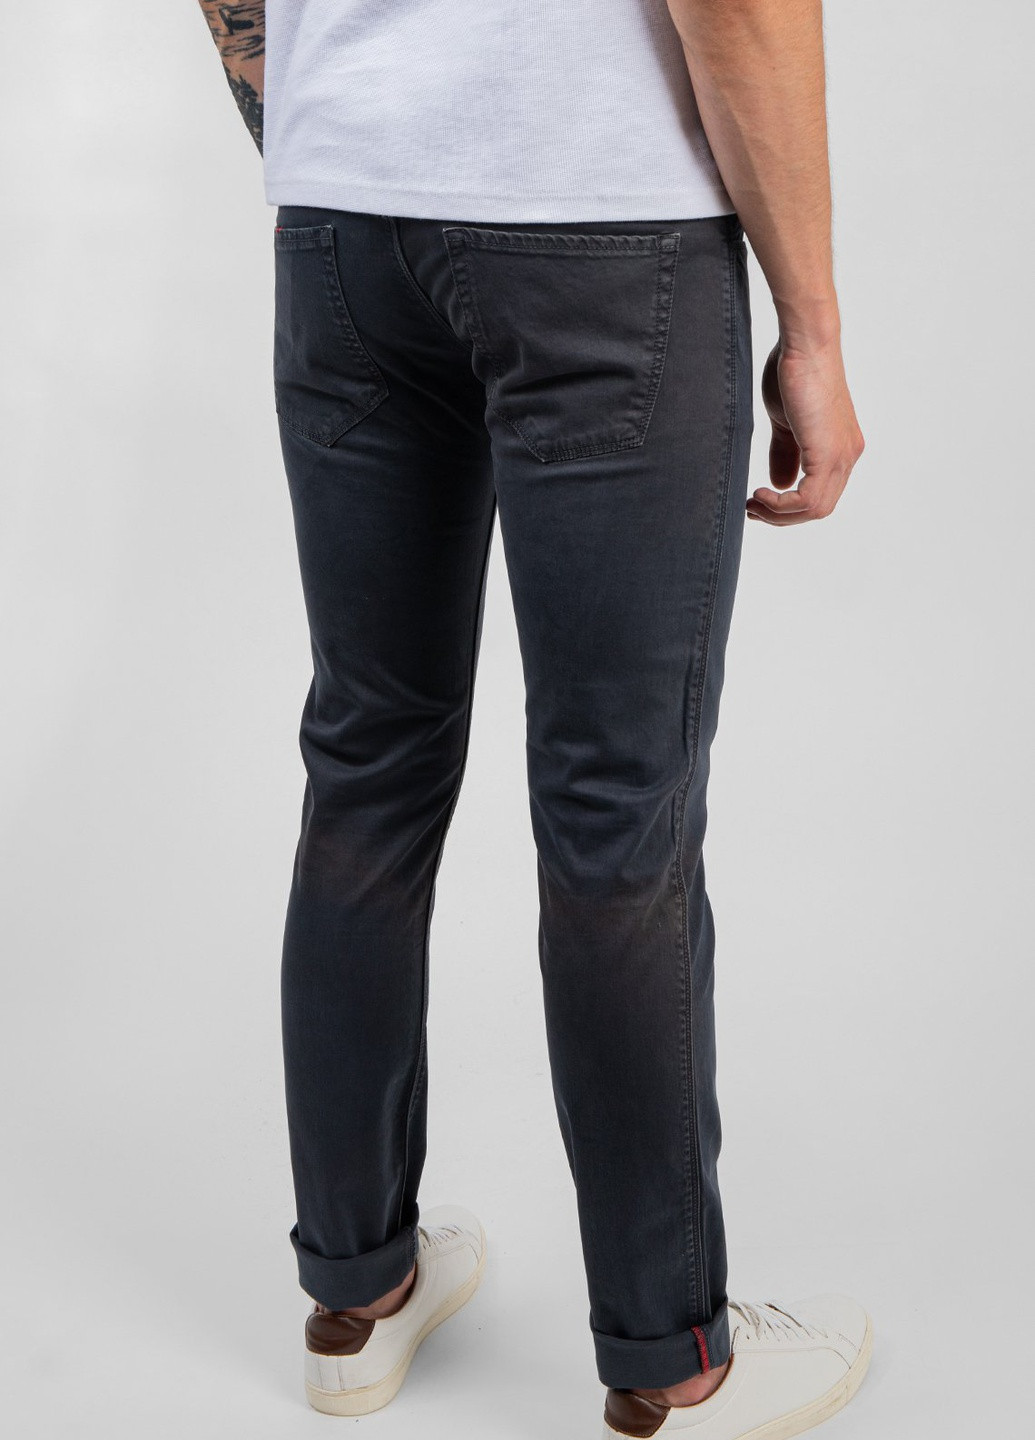 Темно-серые демисезонные графитовые джинсы skinny Richard J. Brown